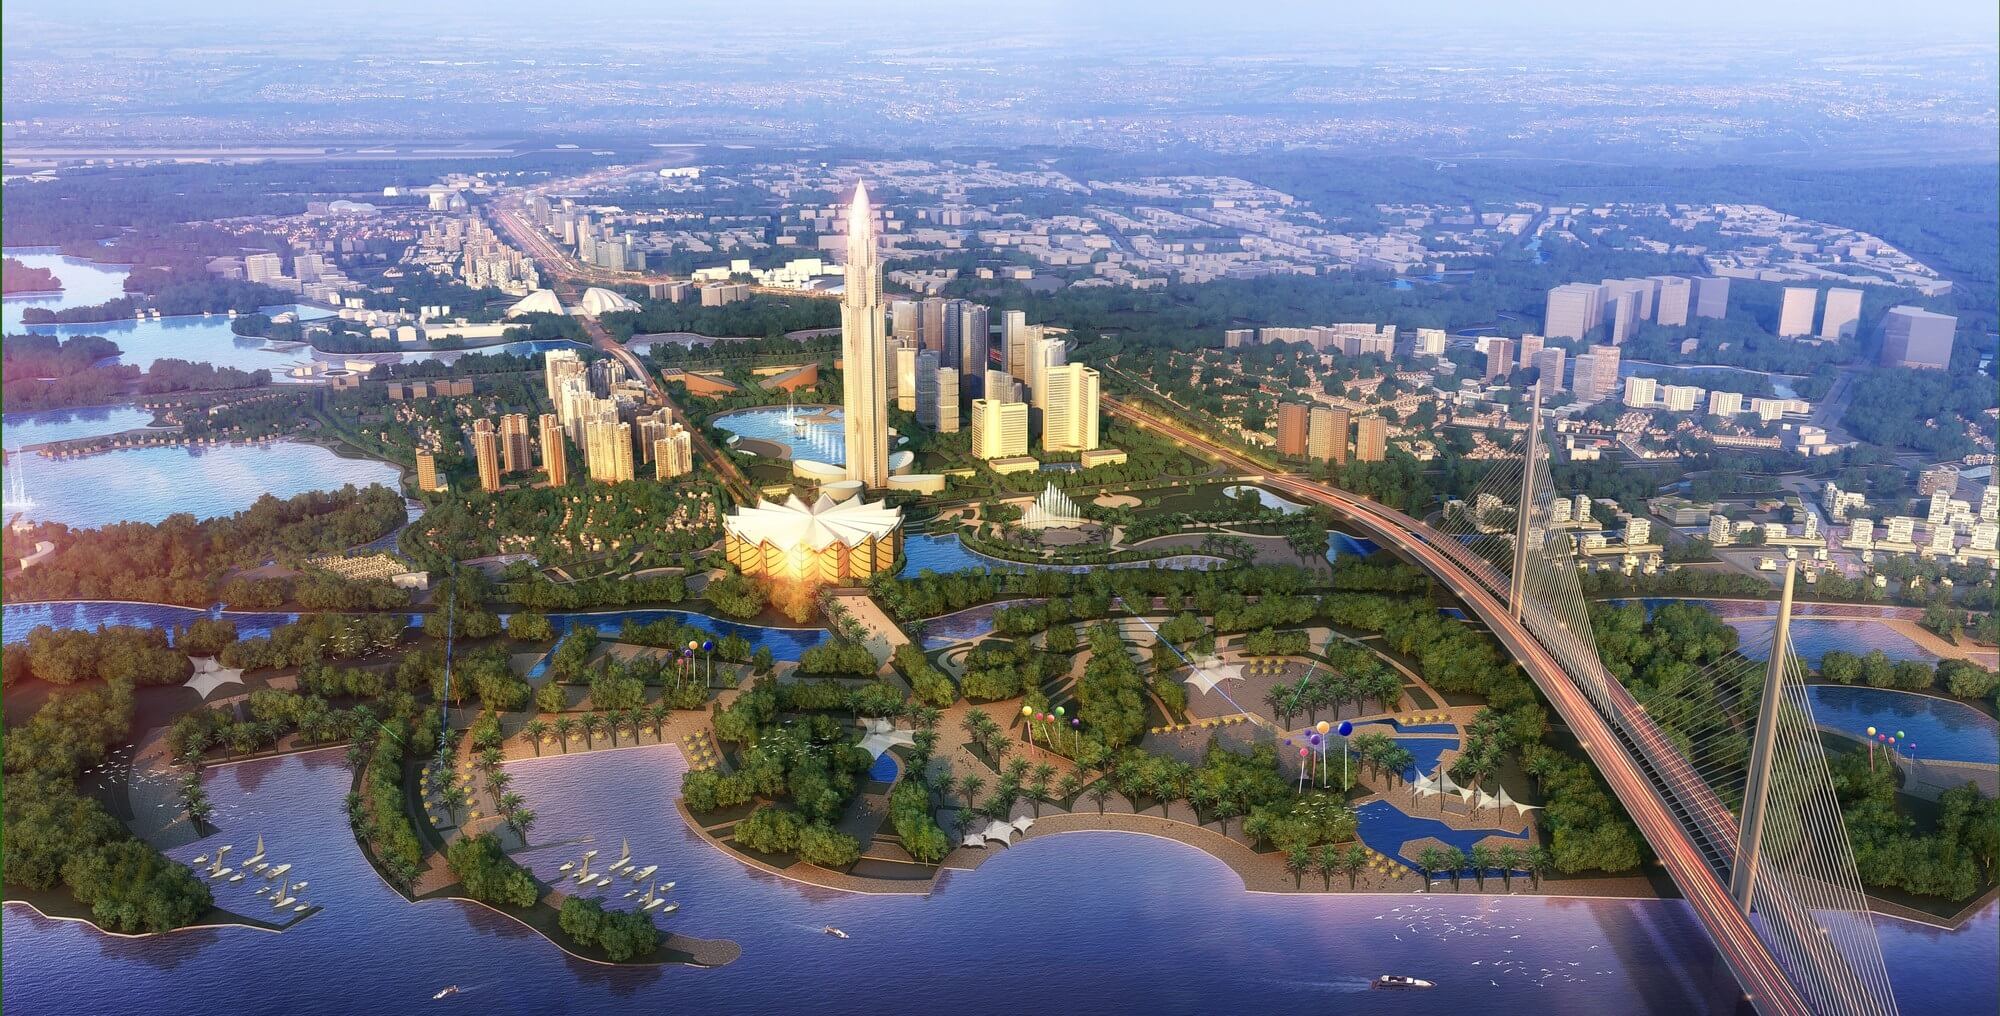 Siêu dự án 4,2 tỷ USD của Hà Nội sắp có tin vui: Tòa tháp 108 tầng cao nhất Việt Nam đặt nền móng đầu - Ảnh 4.